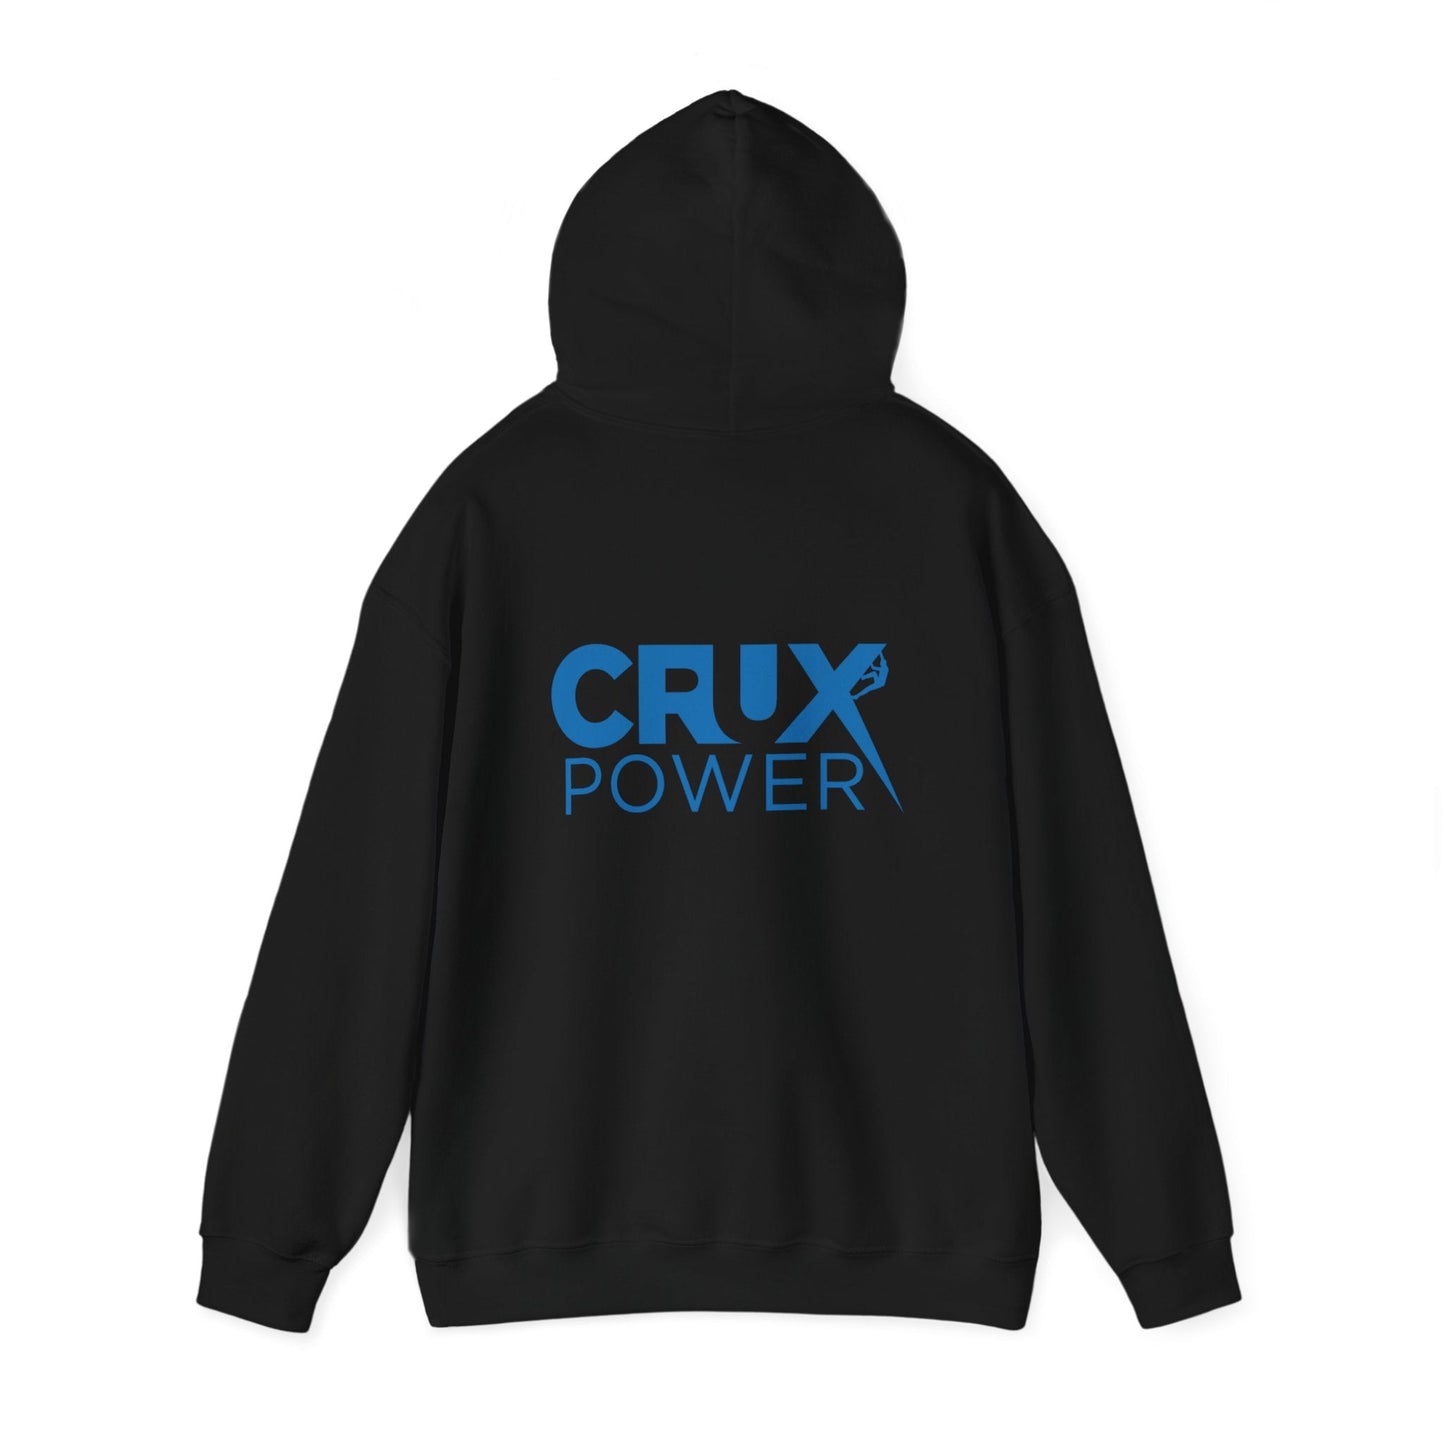 Crux Power Hoodie - Crux Power Climbing